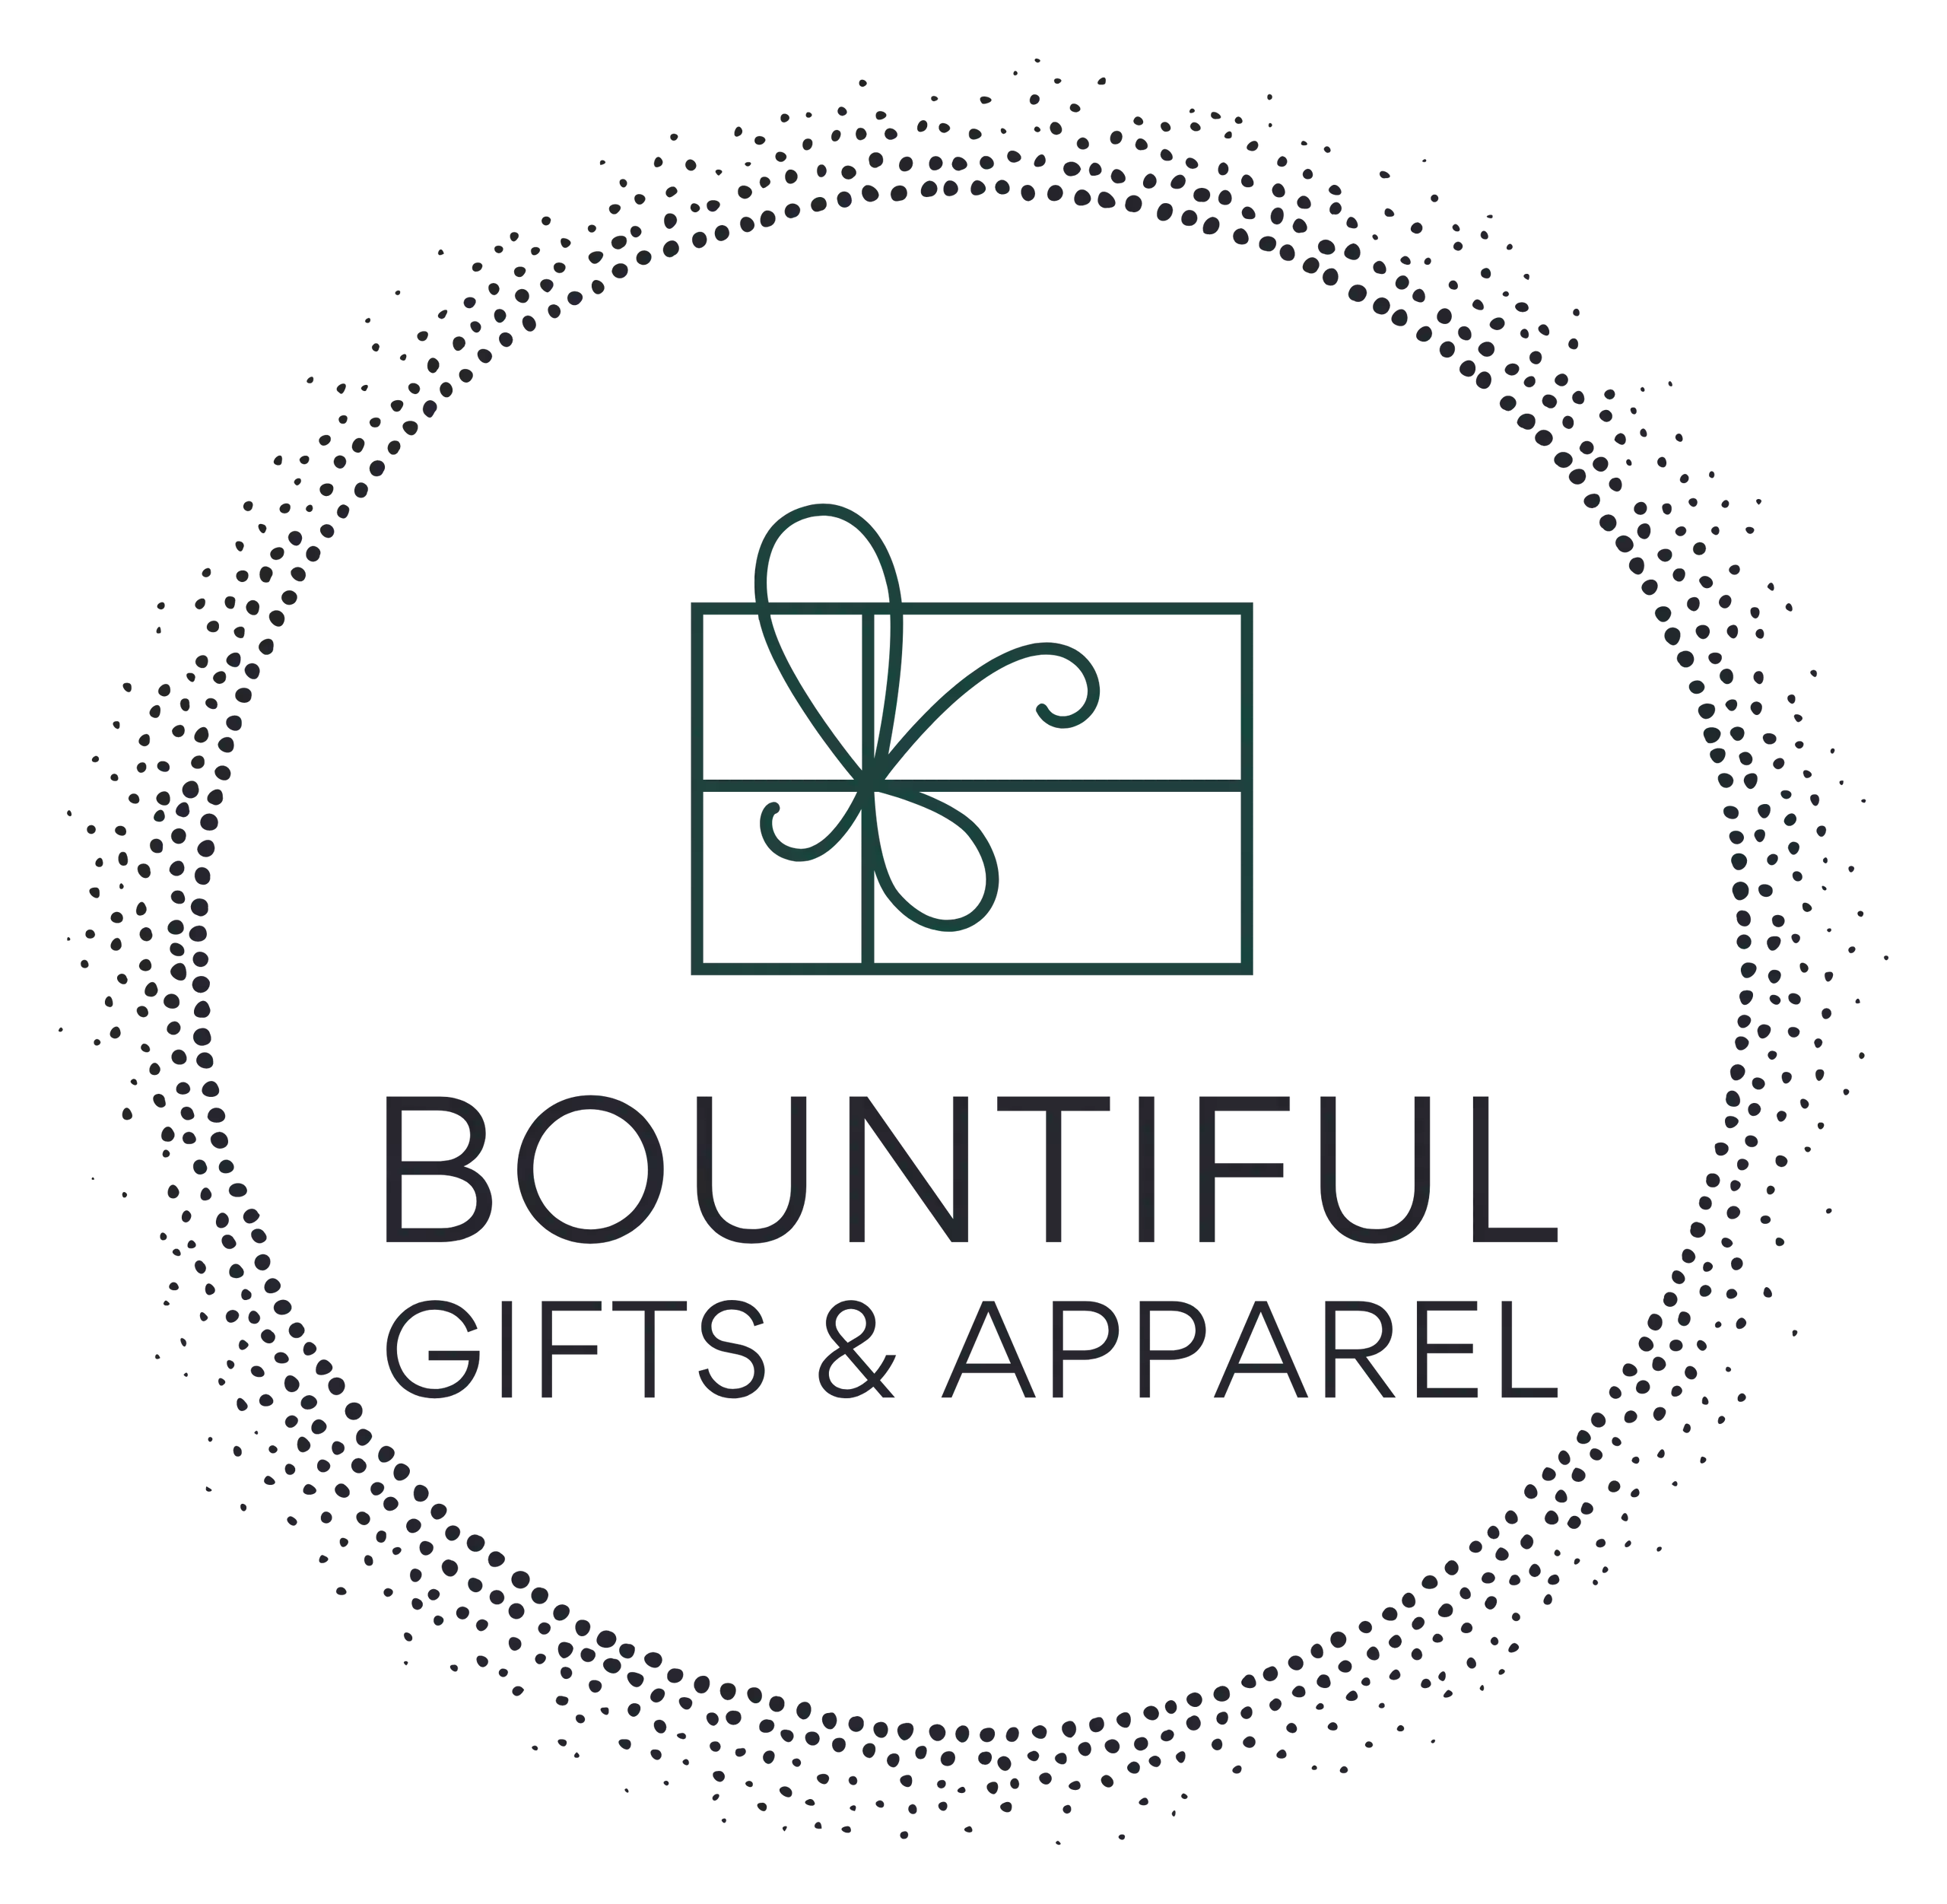 Bountiful Gifts & Apparel